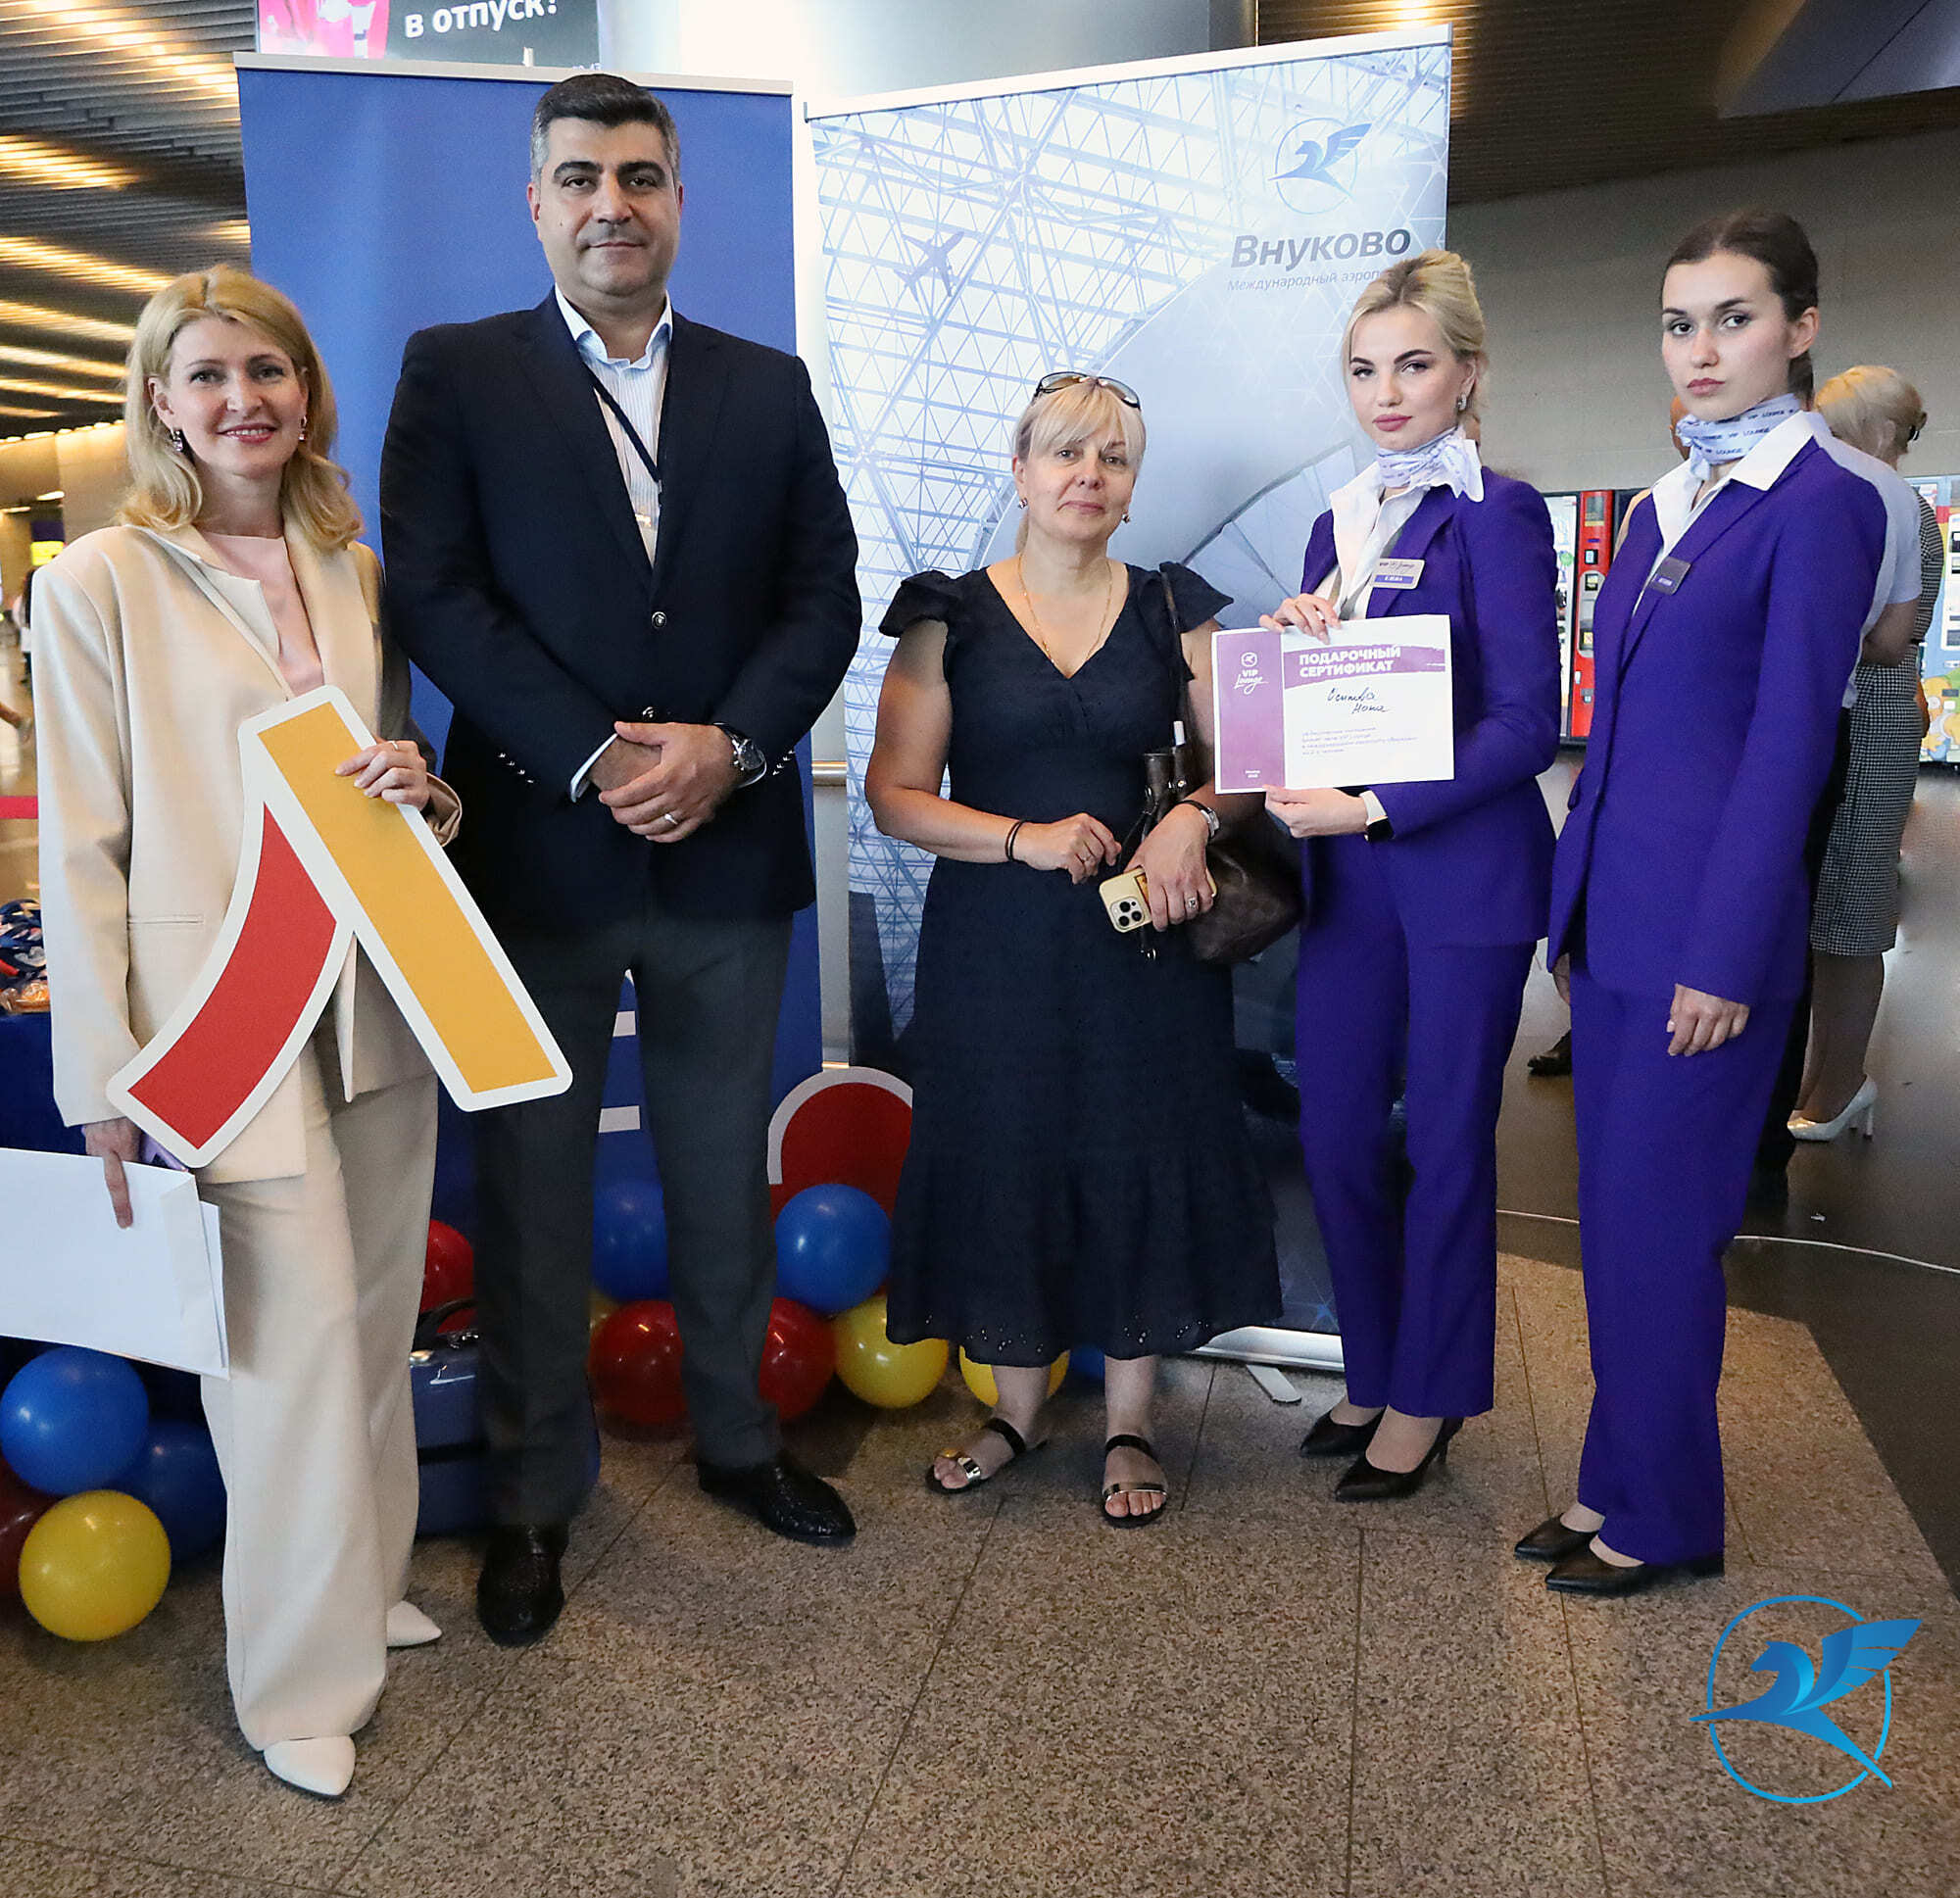 Авиакомпания Fly Arna открывает регулярные рейсы из Международного аэропорта Внуково | Международный аэропорт Внуково